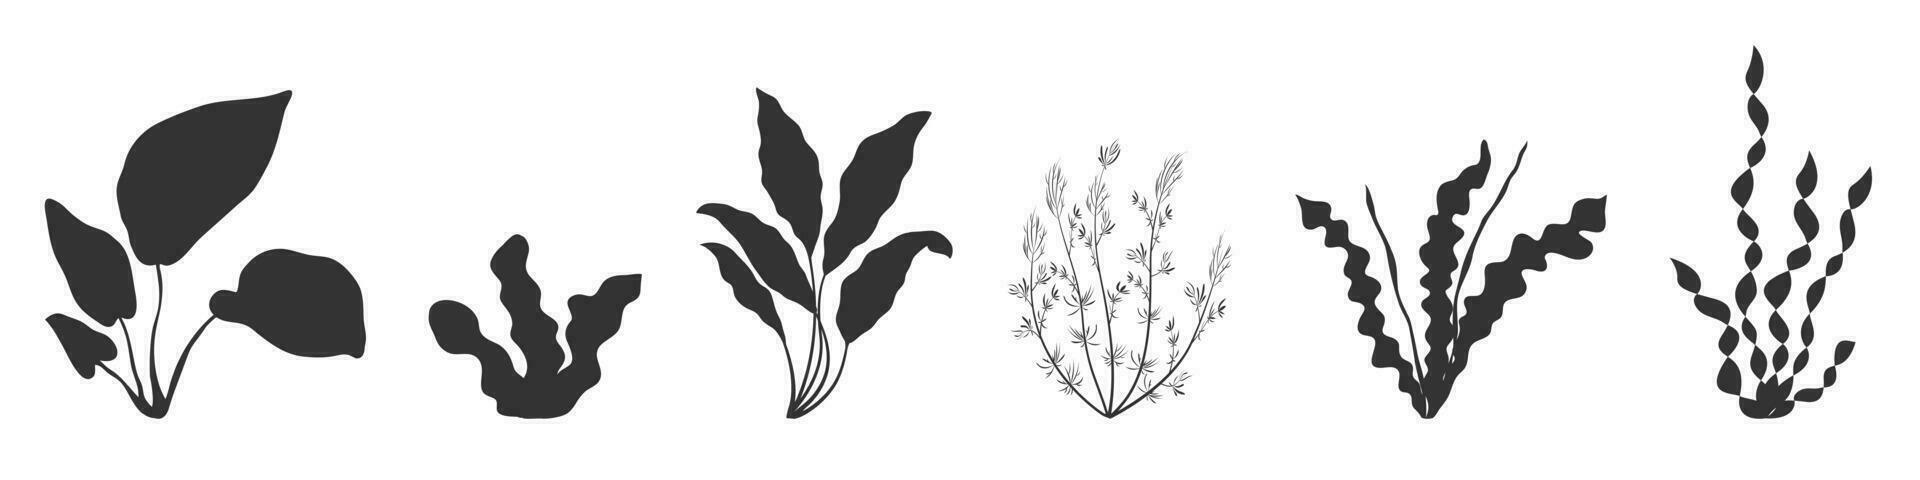 tång silhuett. svart skugga av akvarium vegetation. samling av alg element för design. vektor